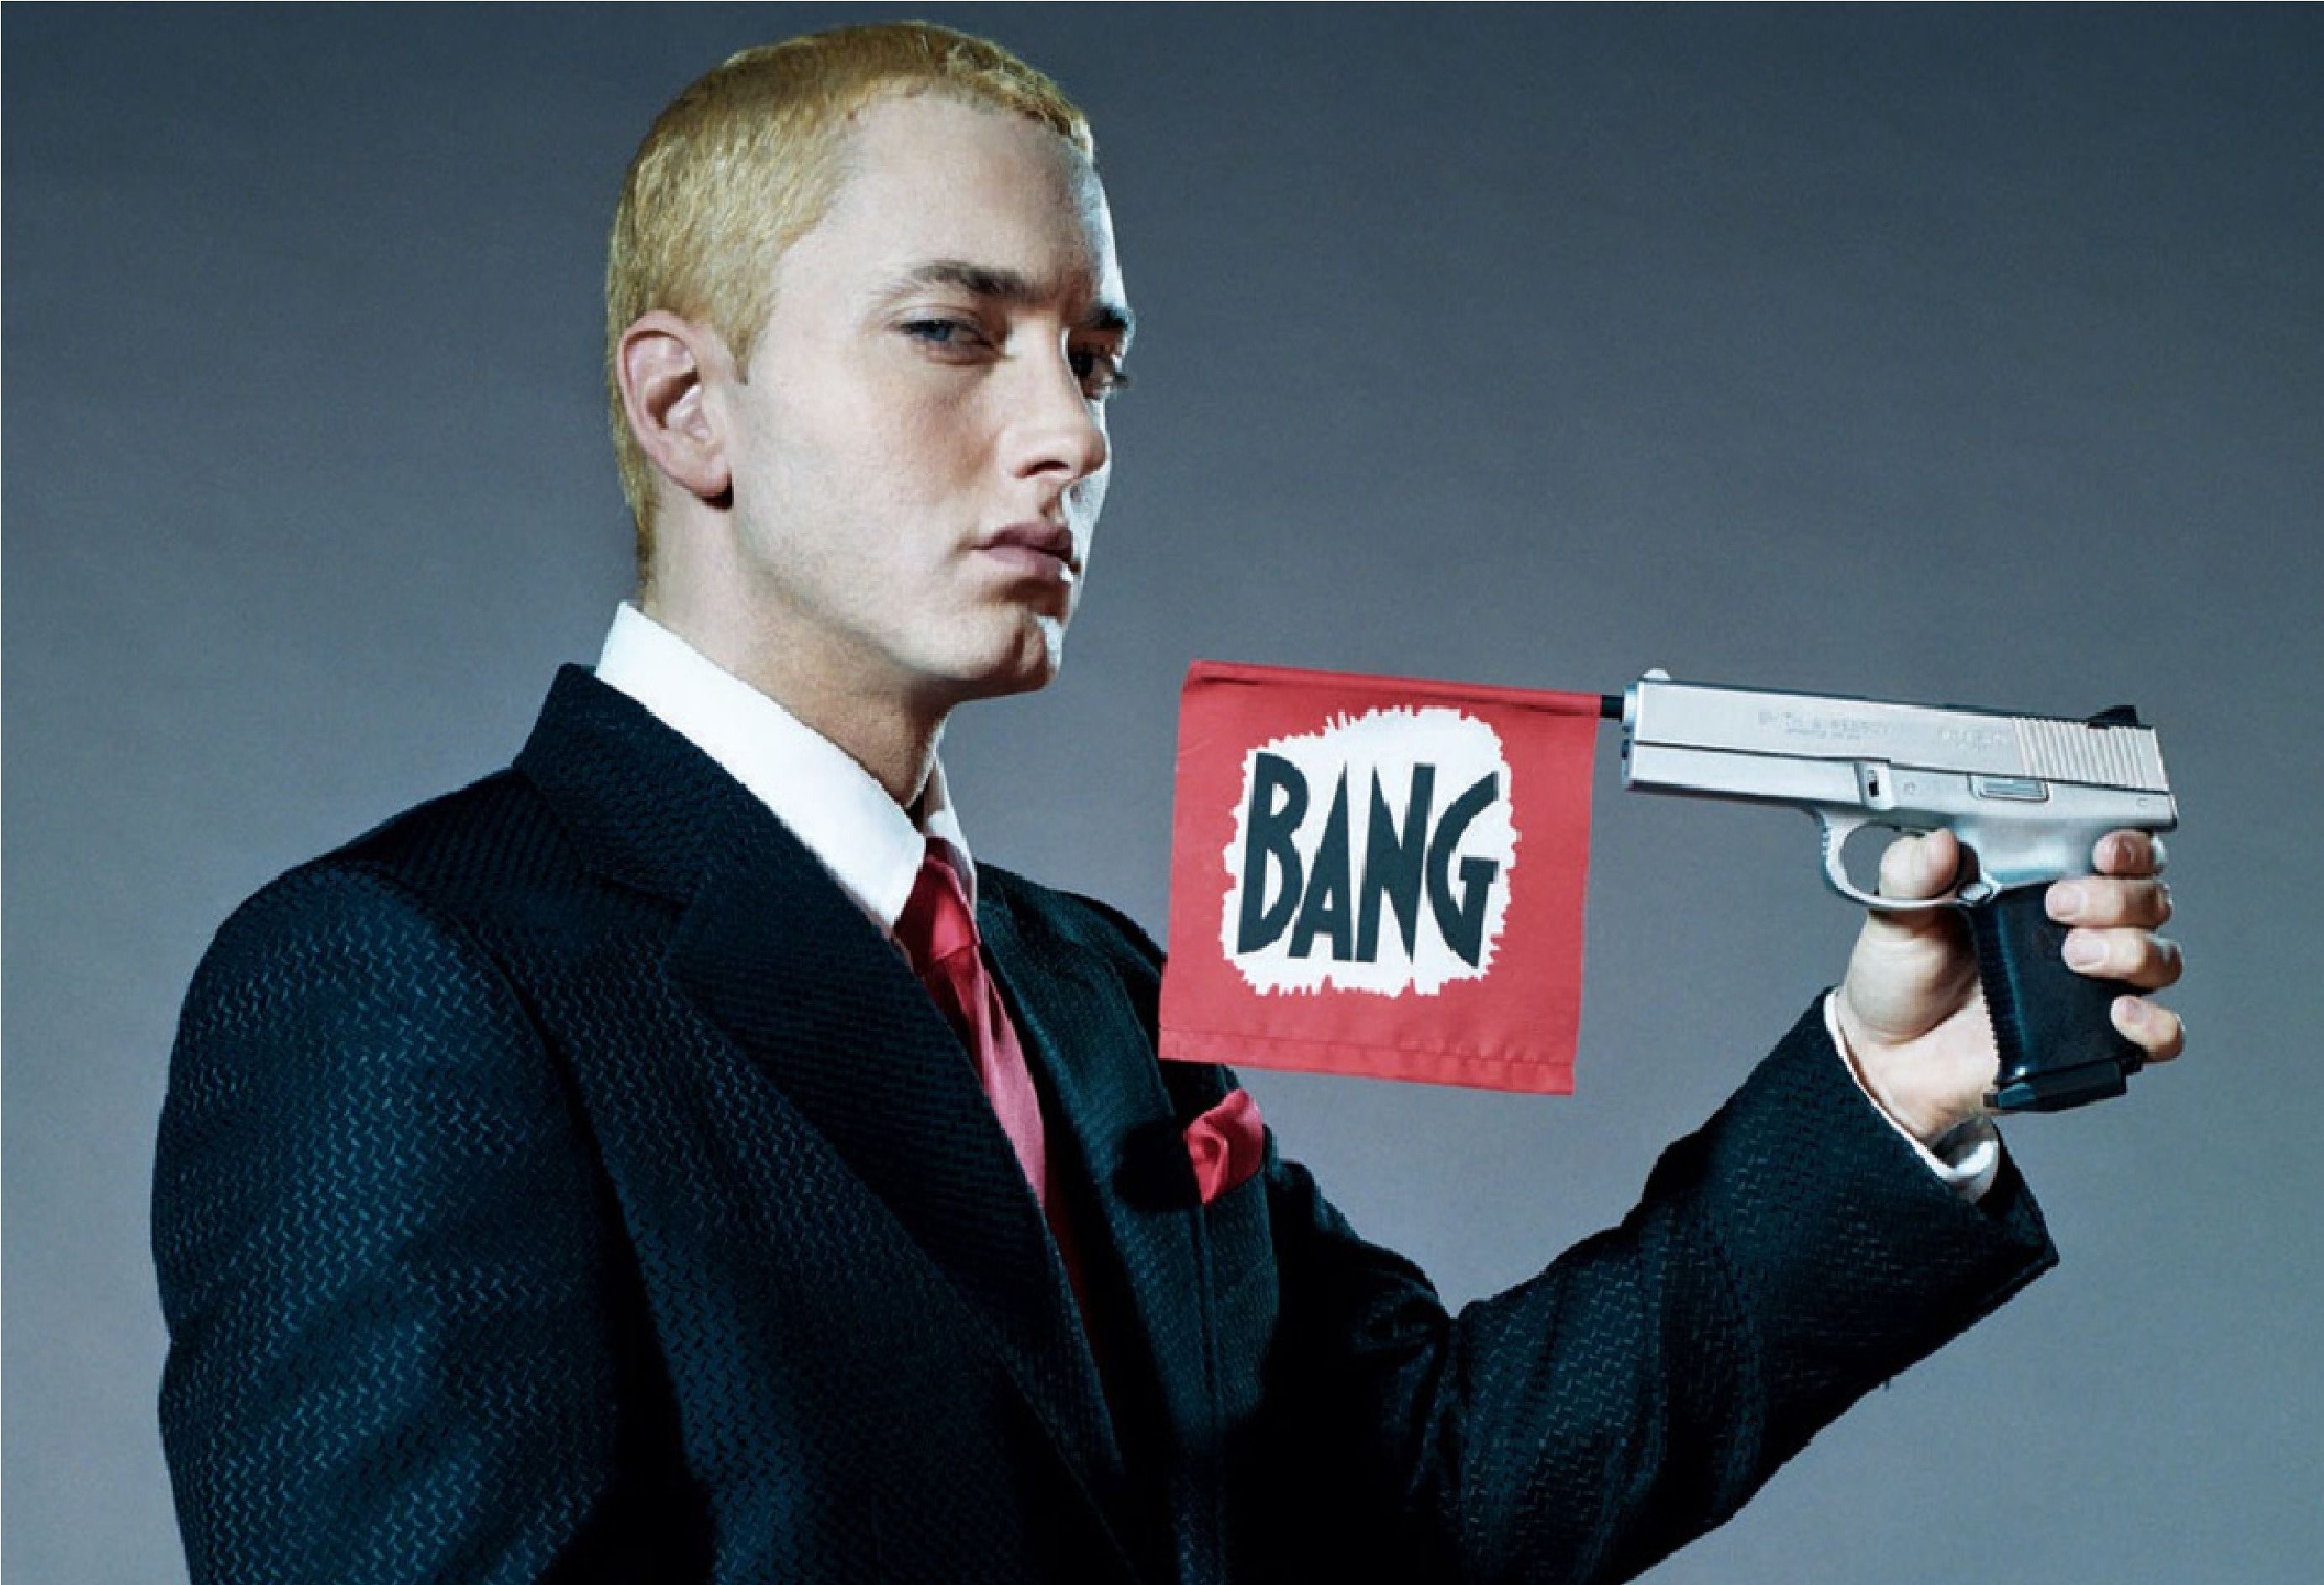 Nice Images Collection: Eminem Desktop Wallpapers